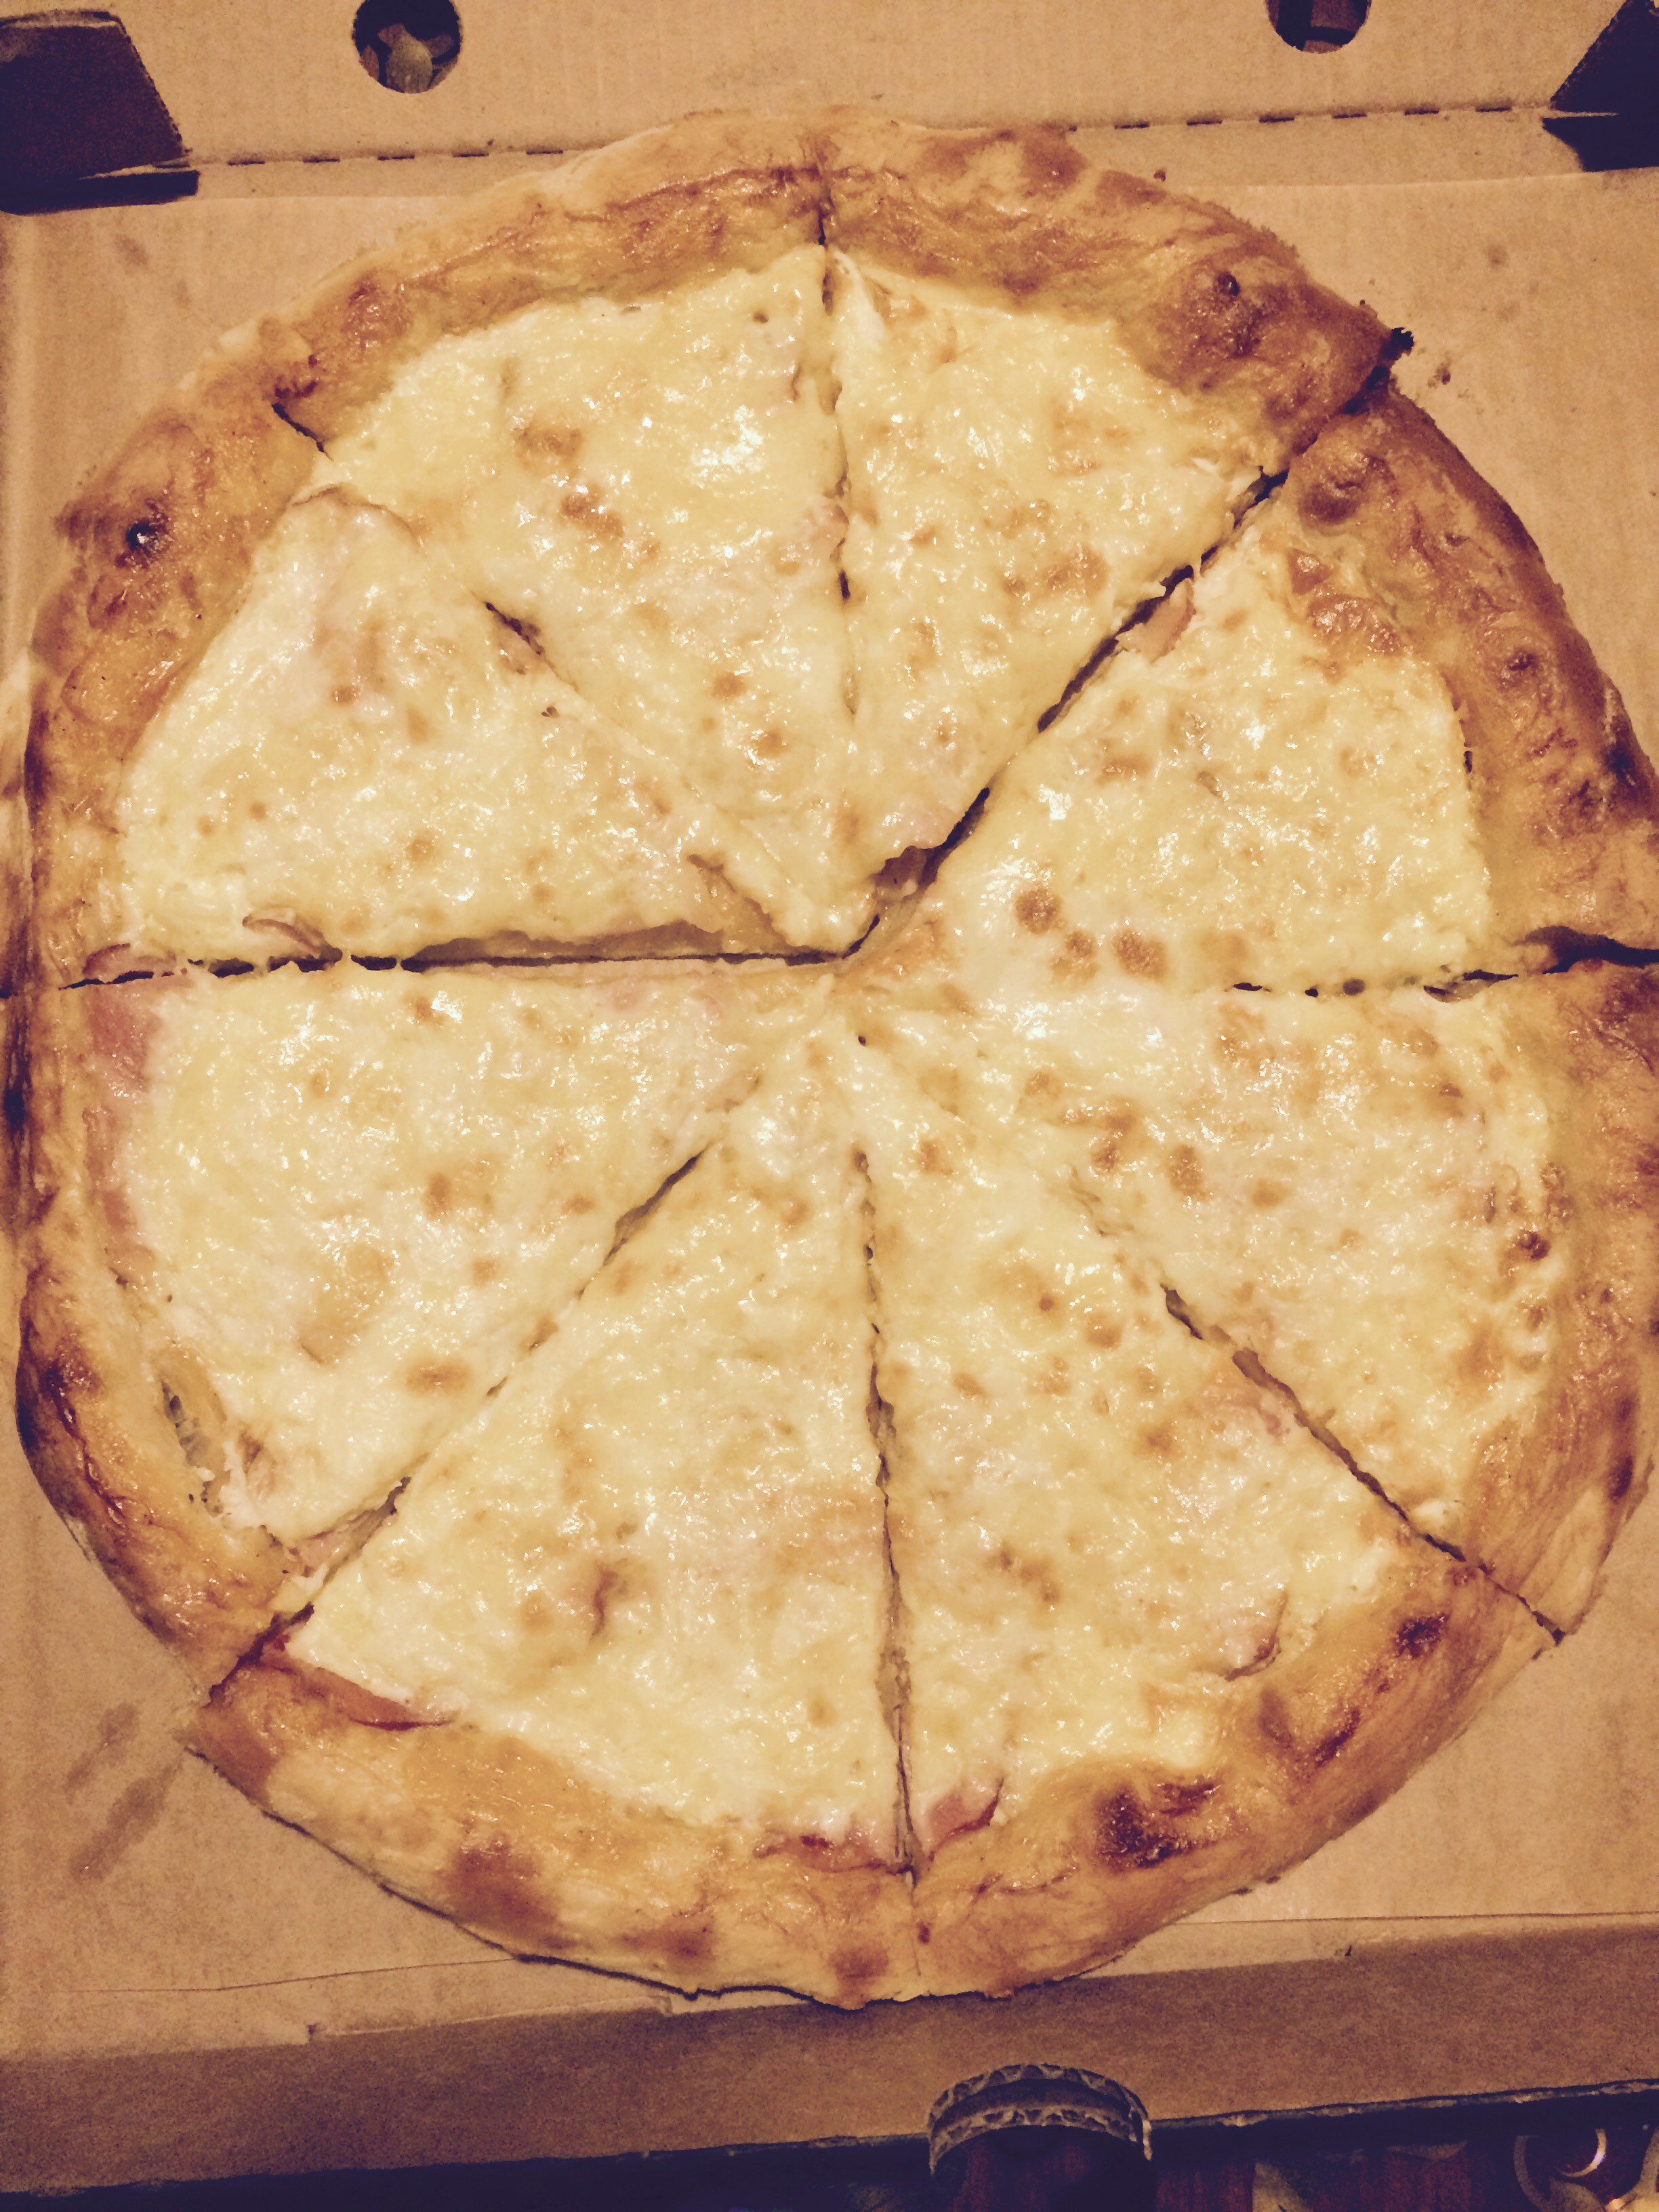 ниндзя пицца в красноярске режим работы фото 99